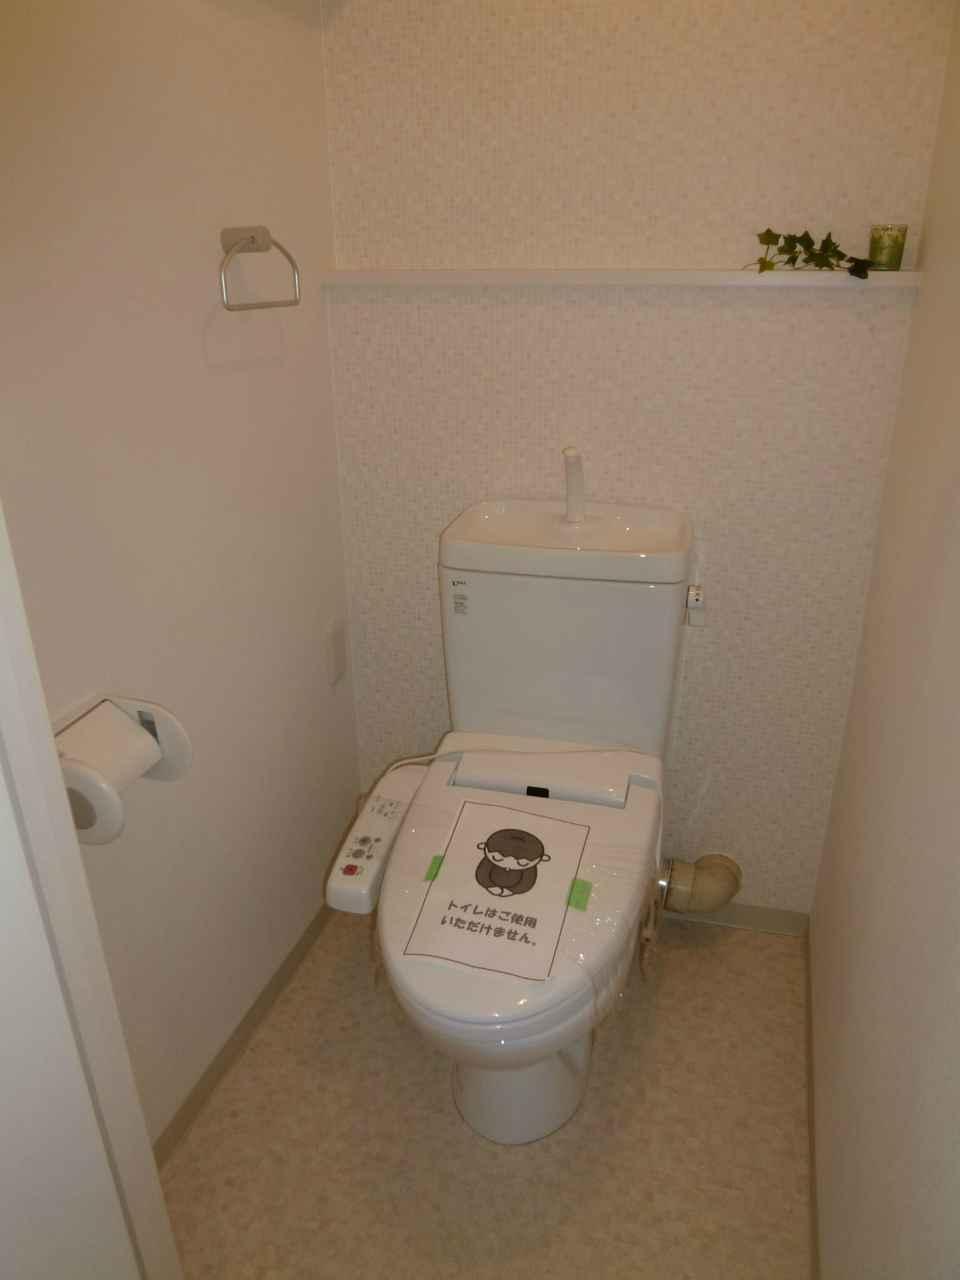 Toilet. Local photos (toilet)